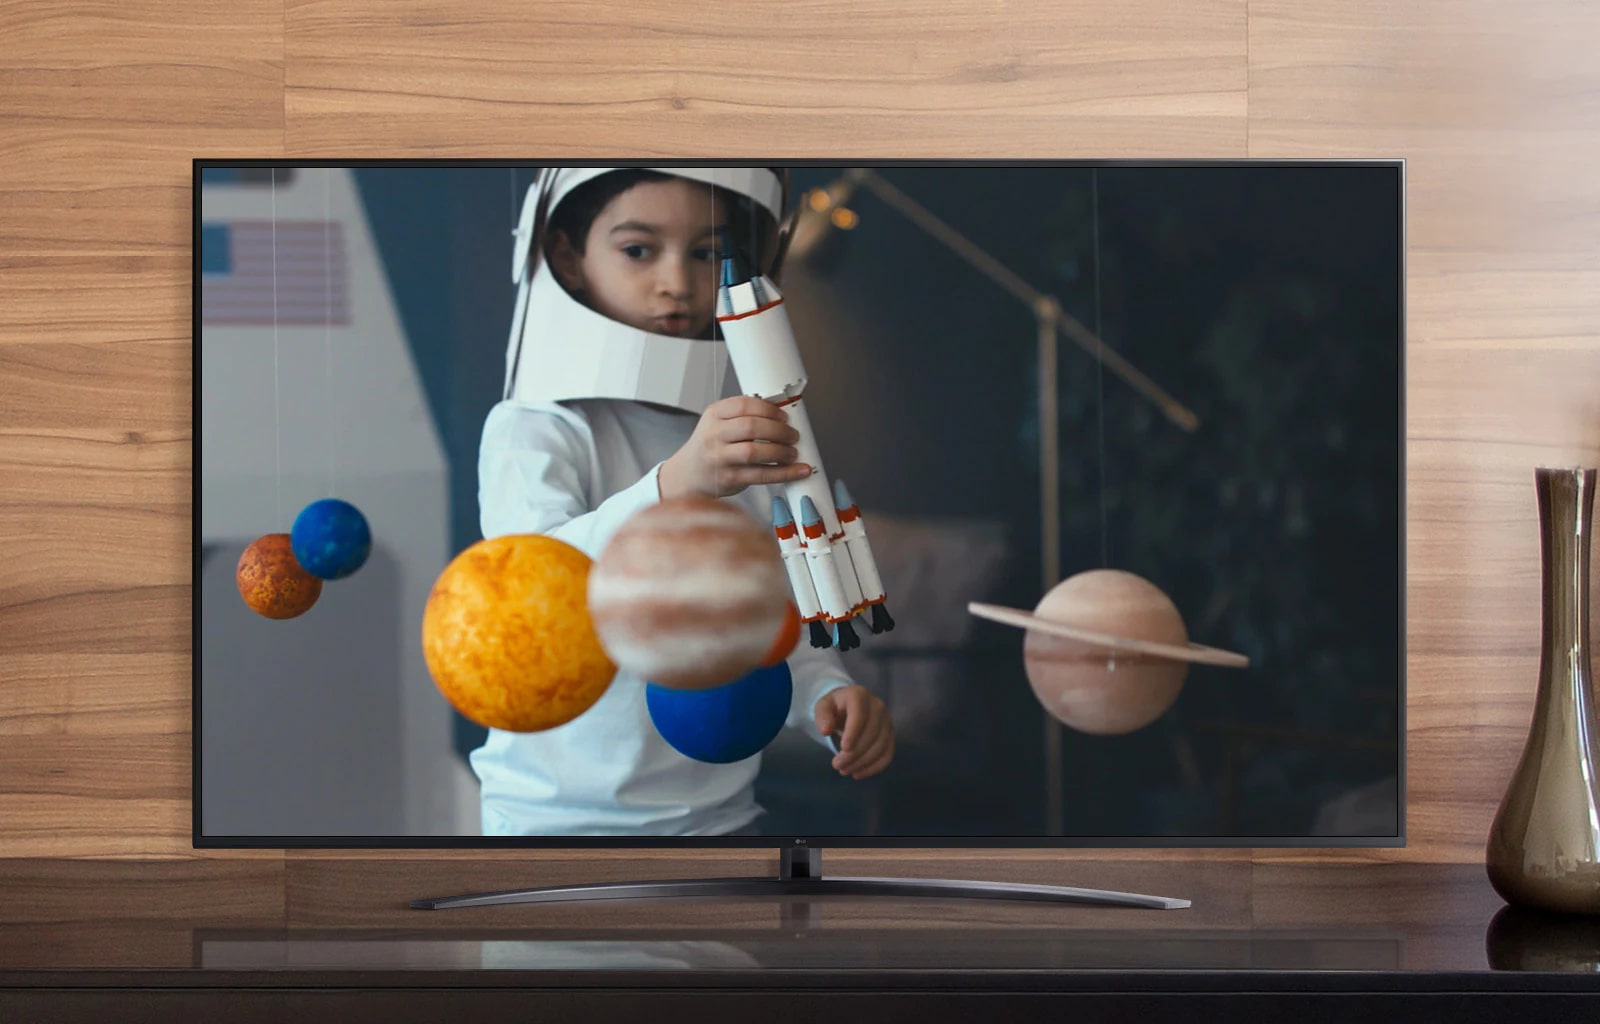 Una pantalla de televisión que reproduce un video de un niño con un traje de astronauta que hizo jugando con una nave espacial en su habitación decorada con miniaturas de planetas (ver el video)